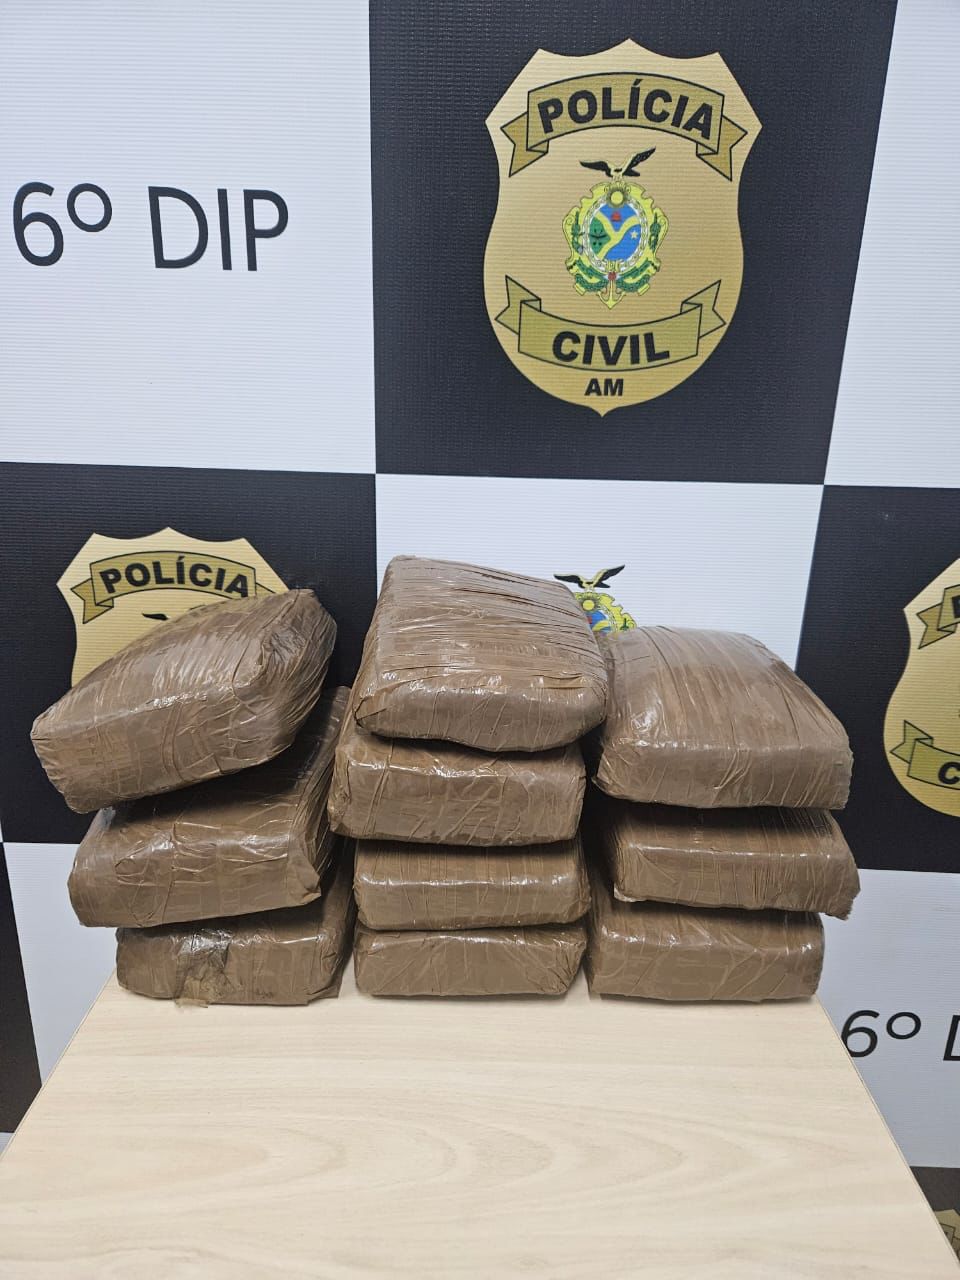 Os tabletes de maconha foram encontrados após denúncia anonima - Foto: Divulgação/PC-AM.